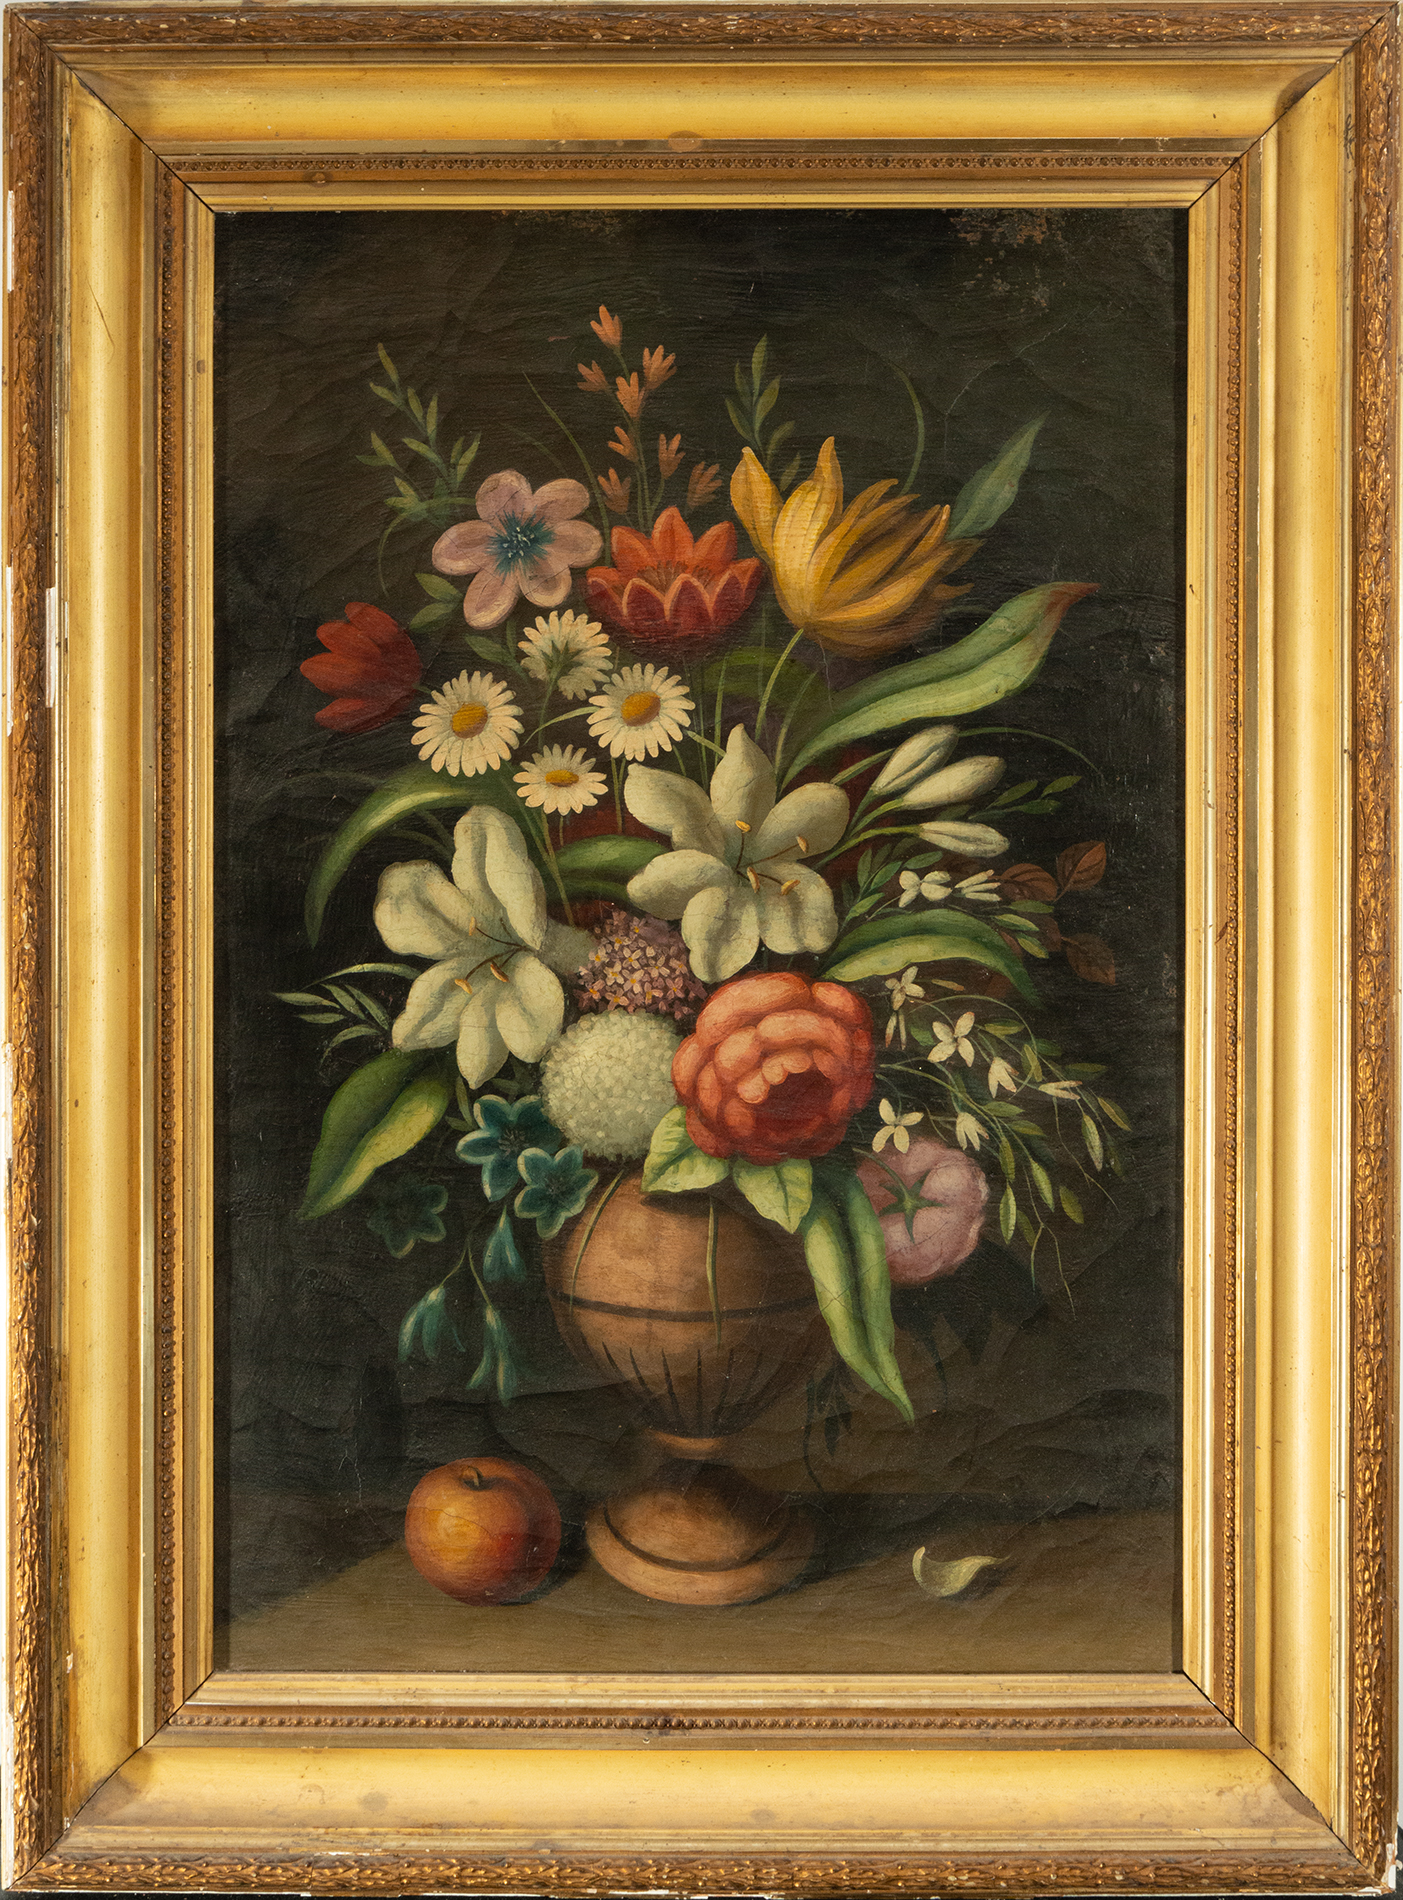 Bouquet of Flowers, 19th century Italian school